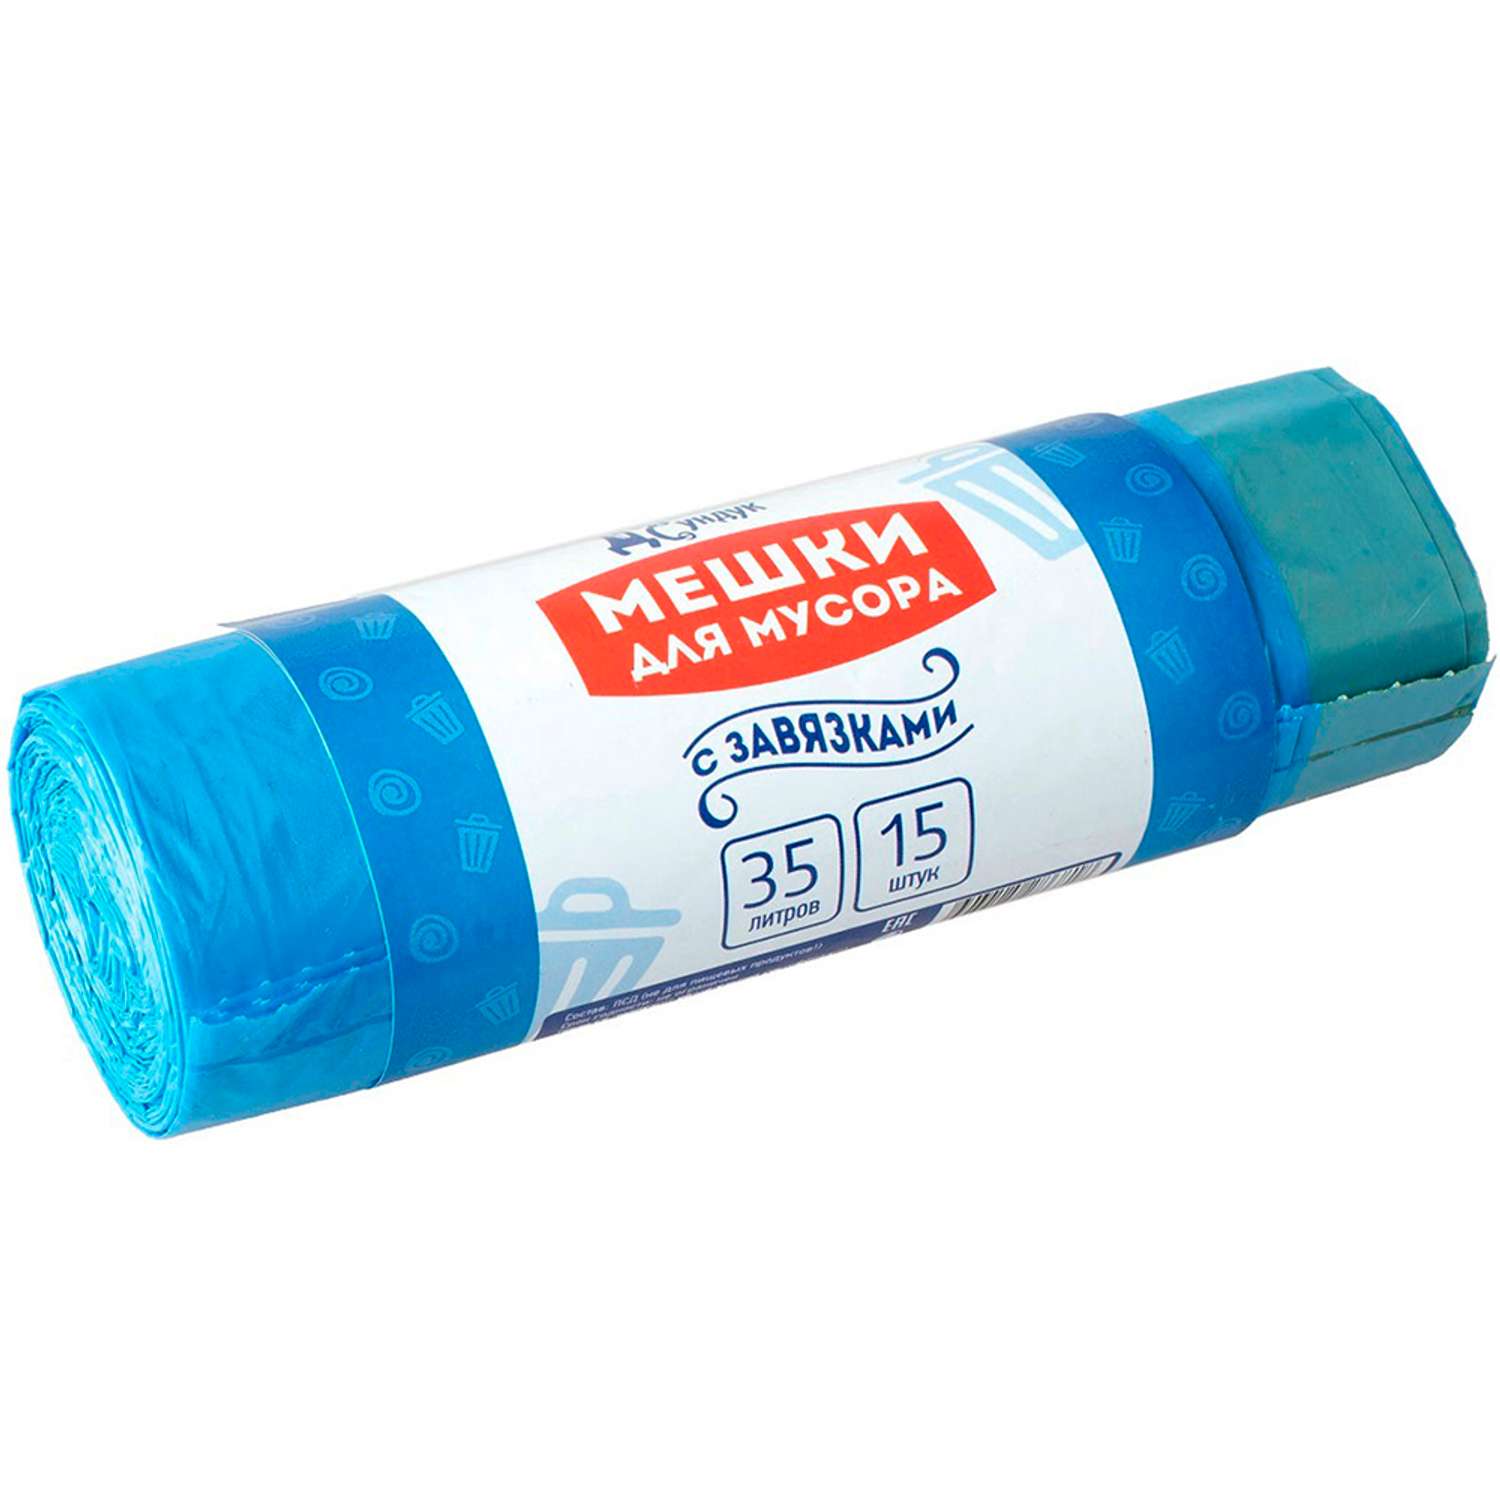 Мешки для мусора Домашний сундук с завязками 35л. 15 шт. рулон 19мкм ДС-168 голубые - фото 1